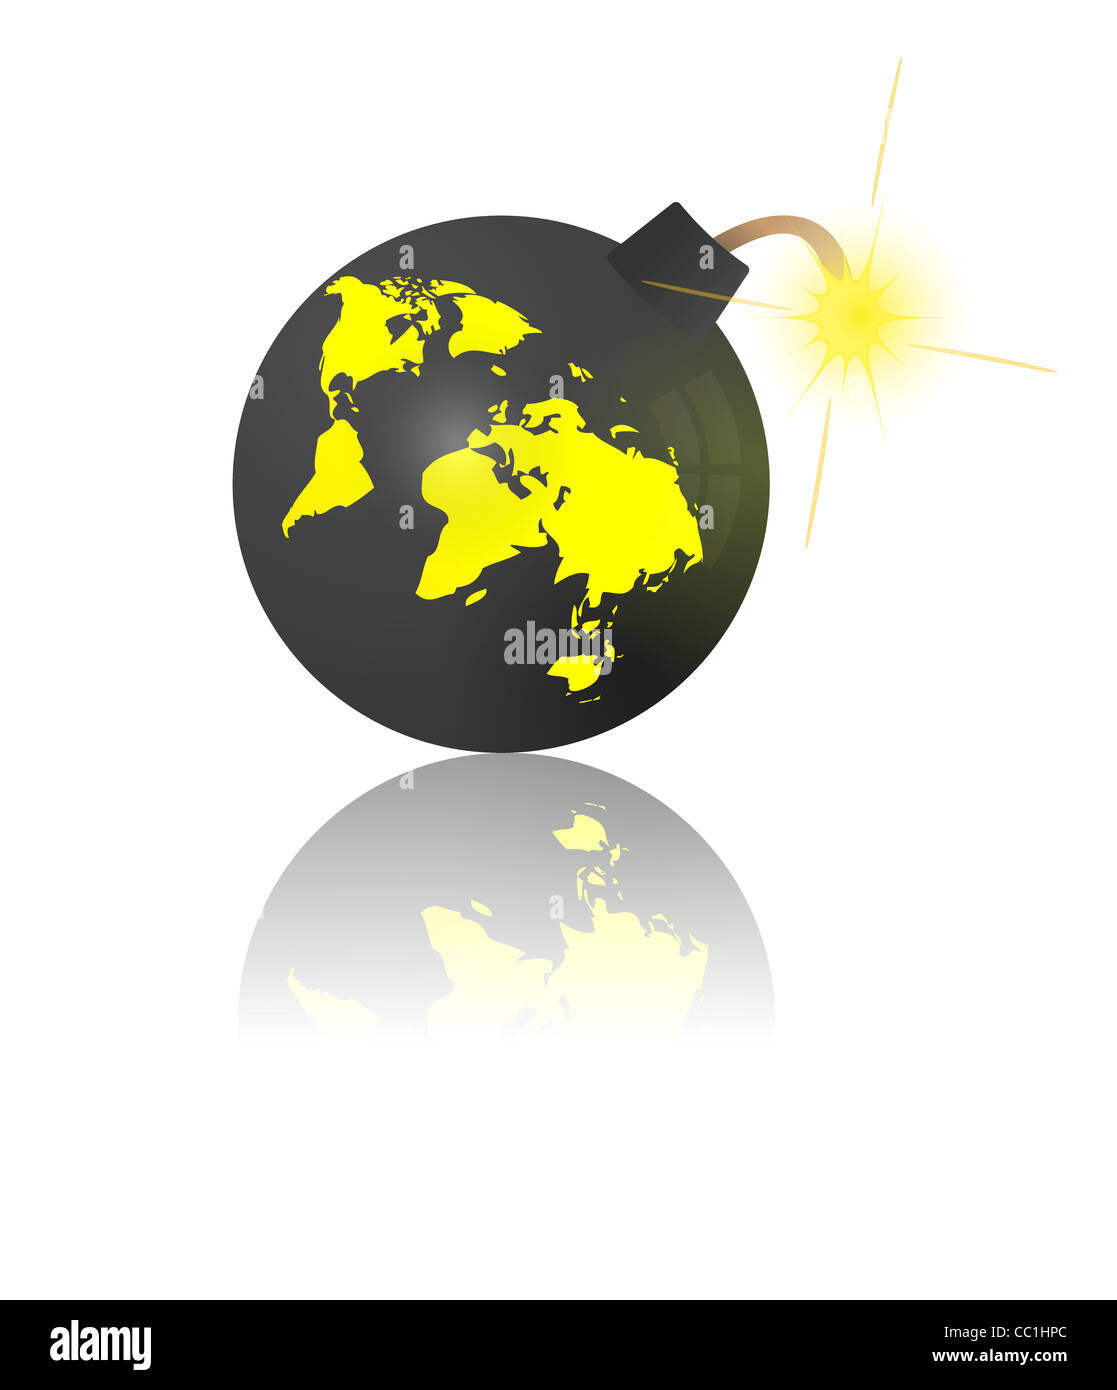 Ende der Welt. Bombe mit Earth-Karte Stockfoto